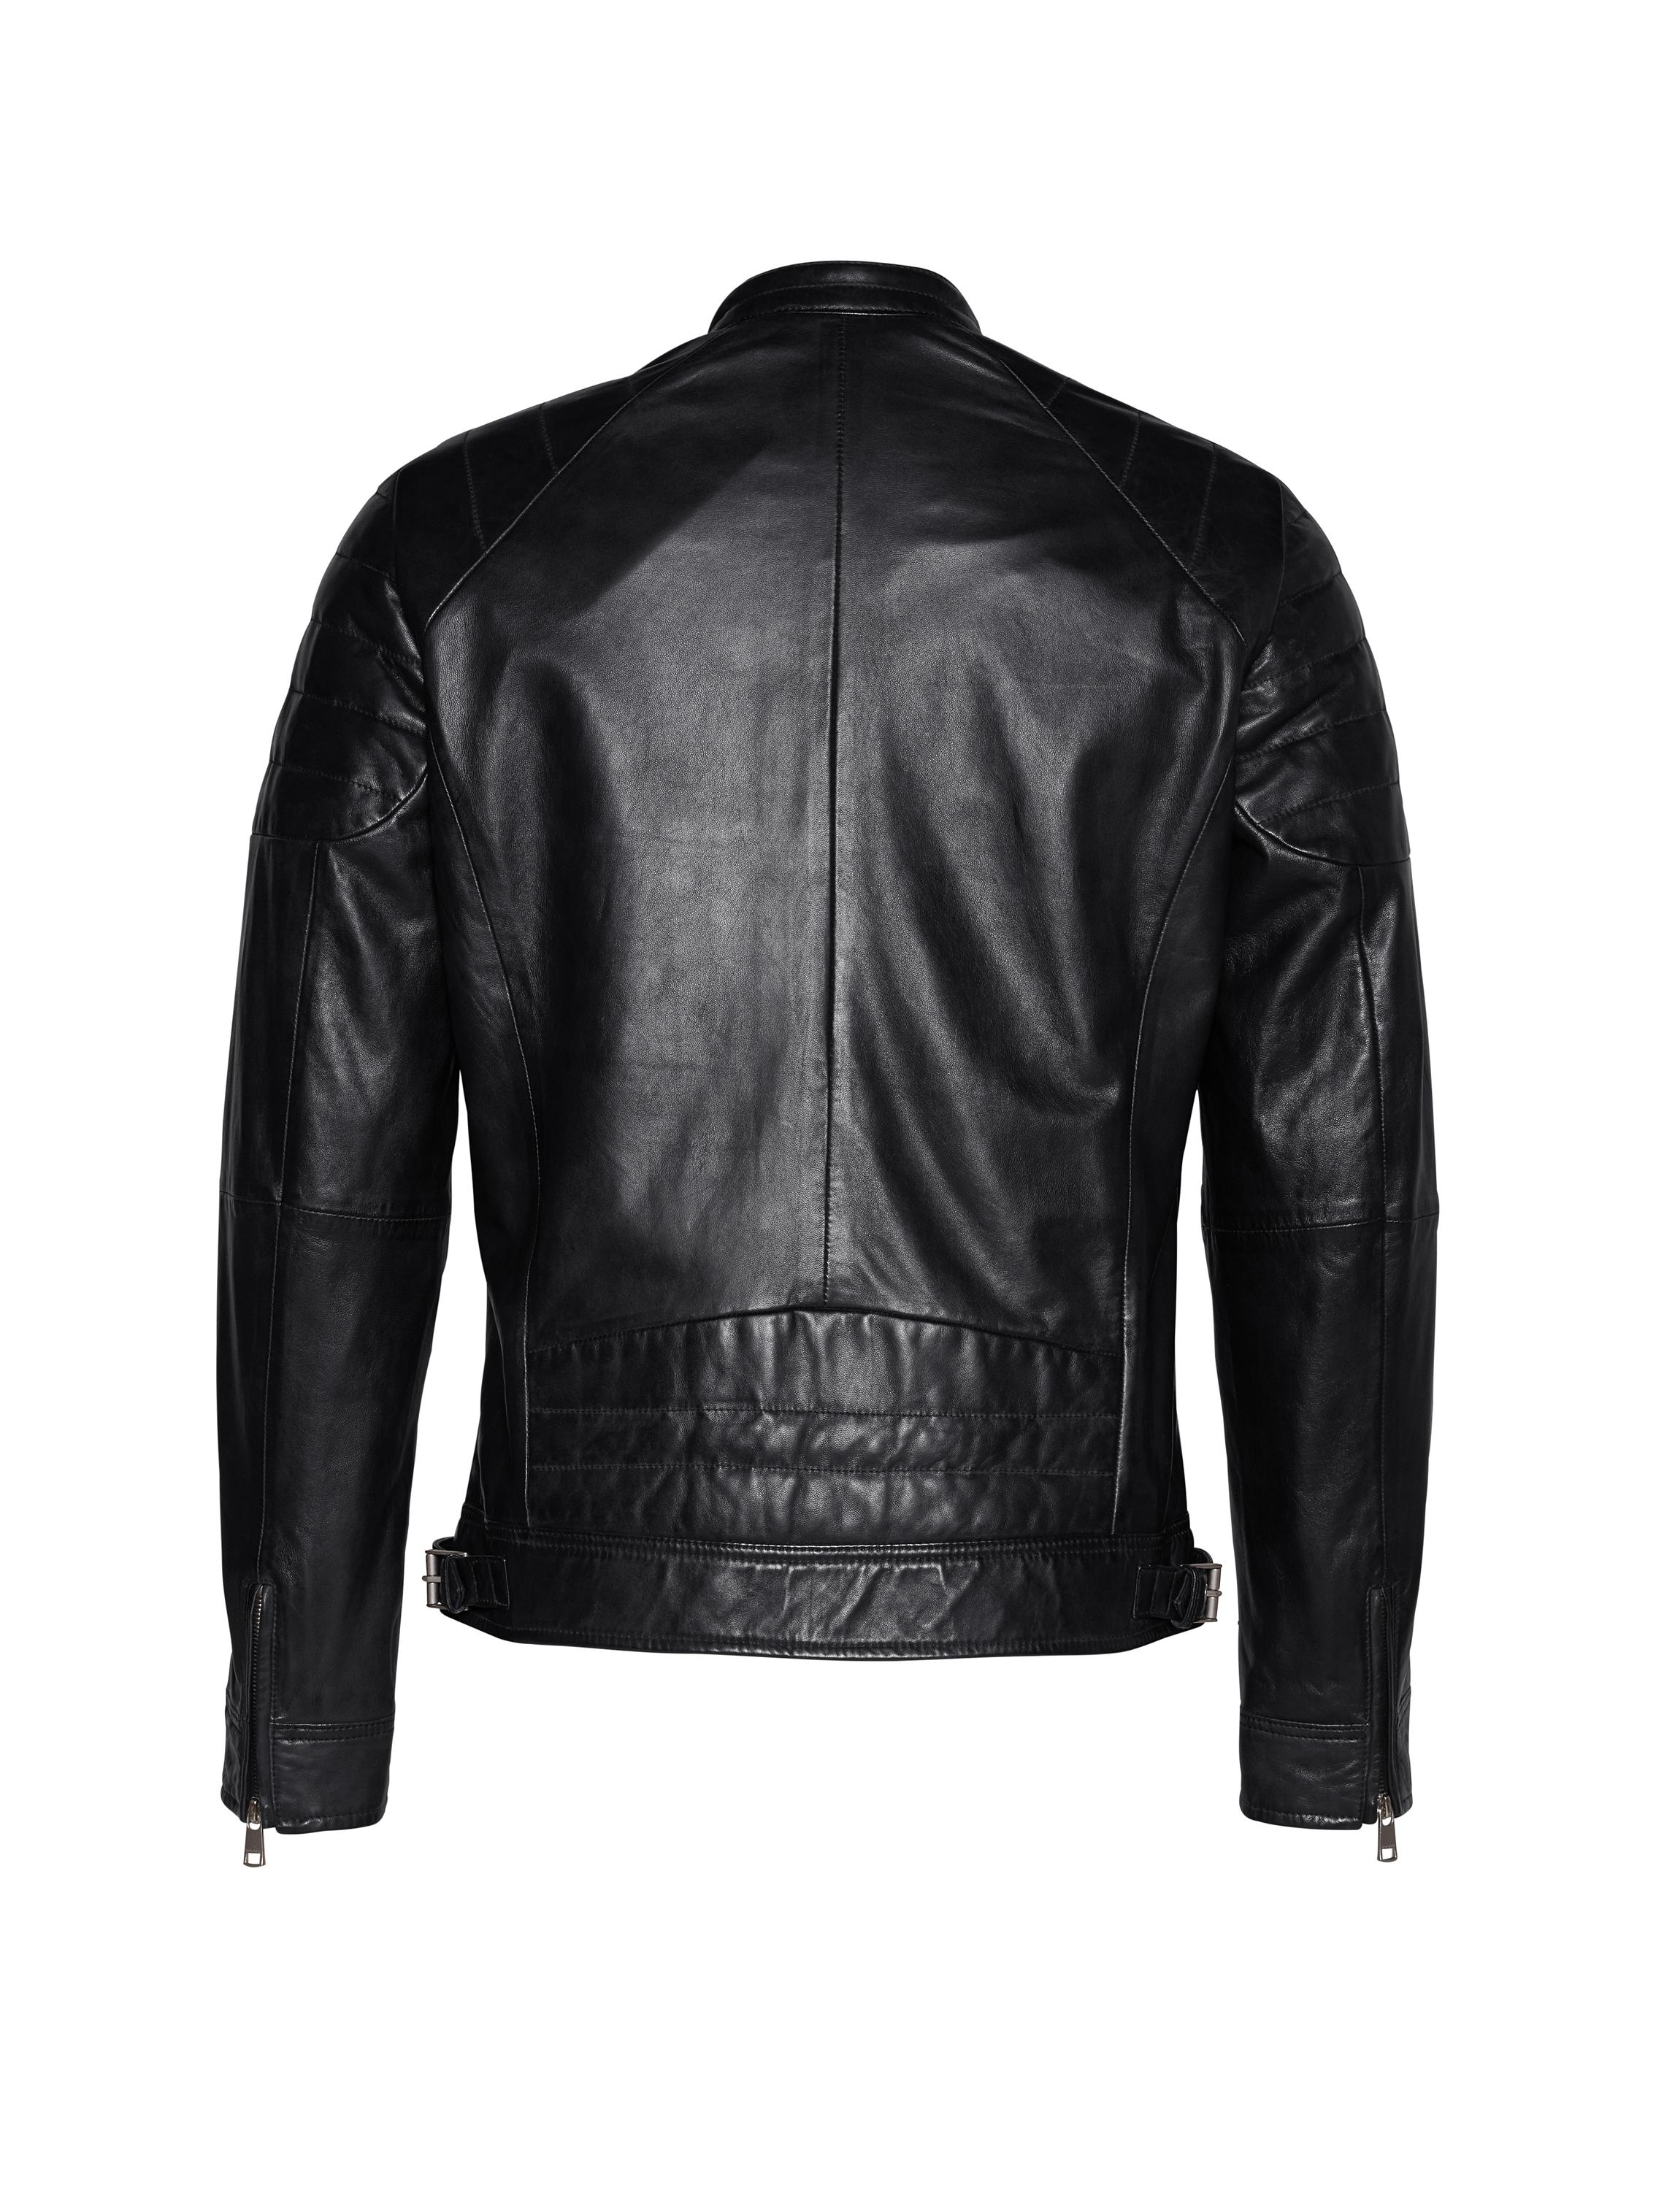 Bogner Leather Jacket Roy-l in Black for Men - Lyst